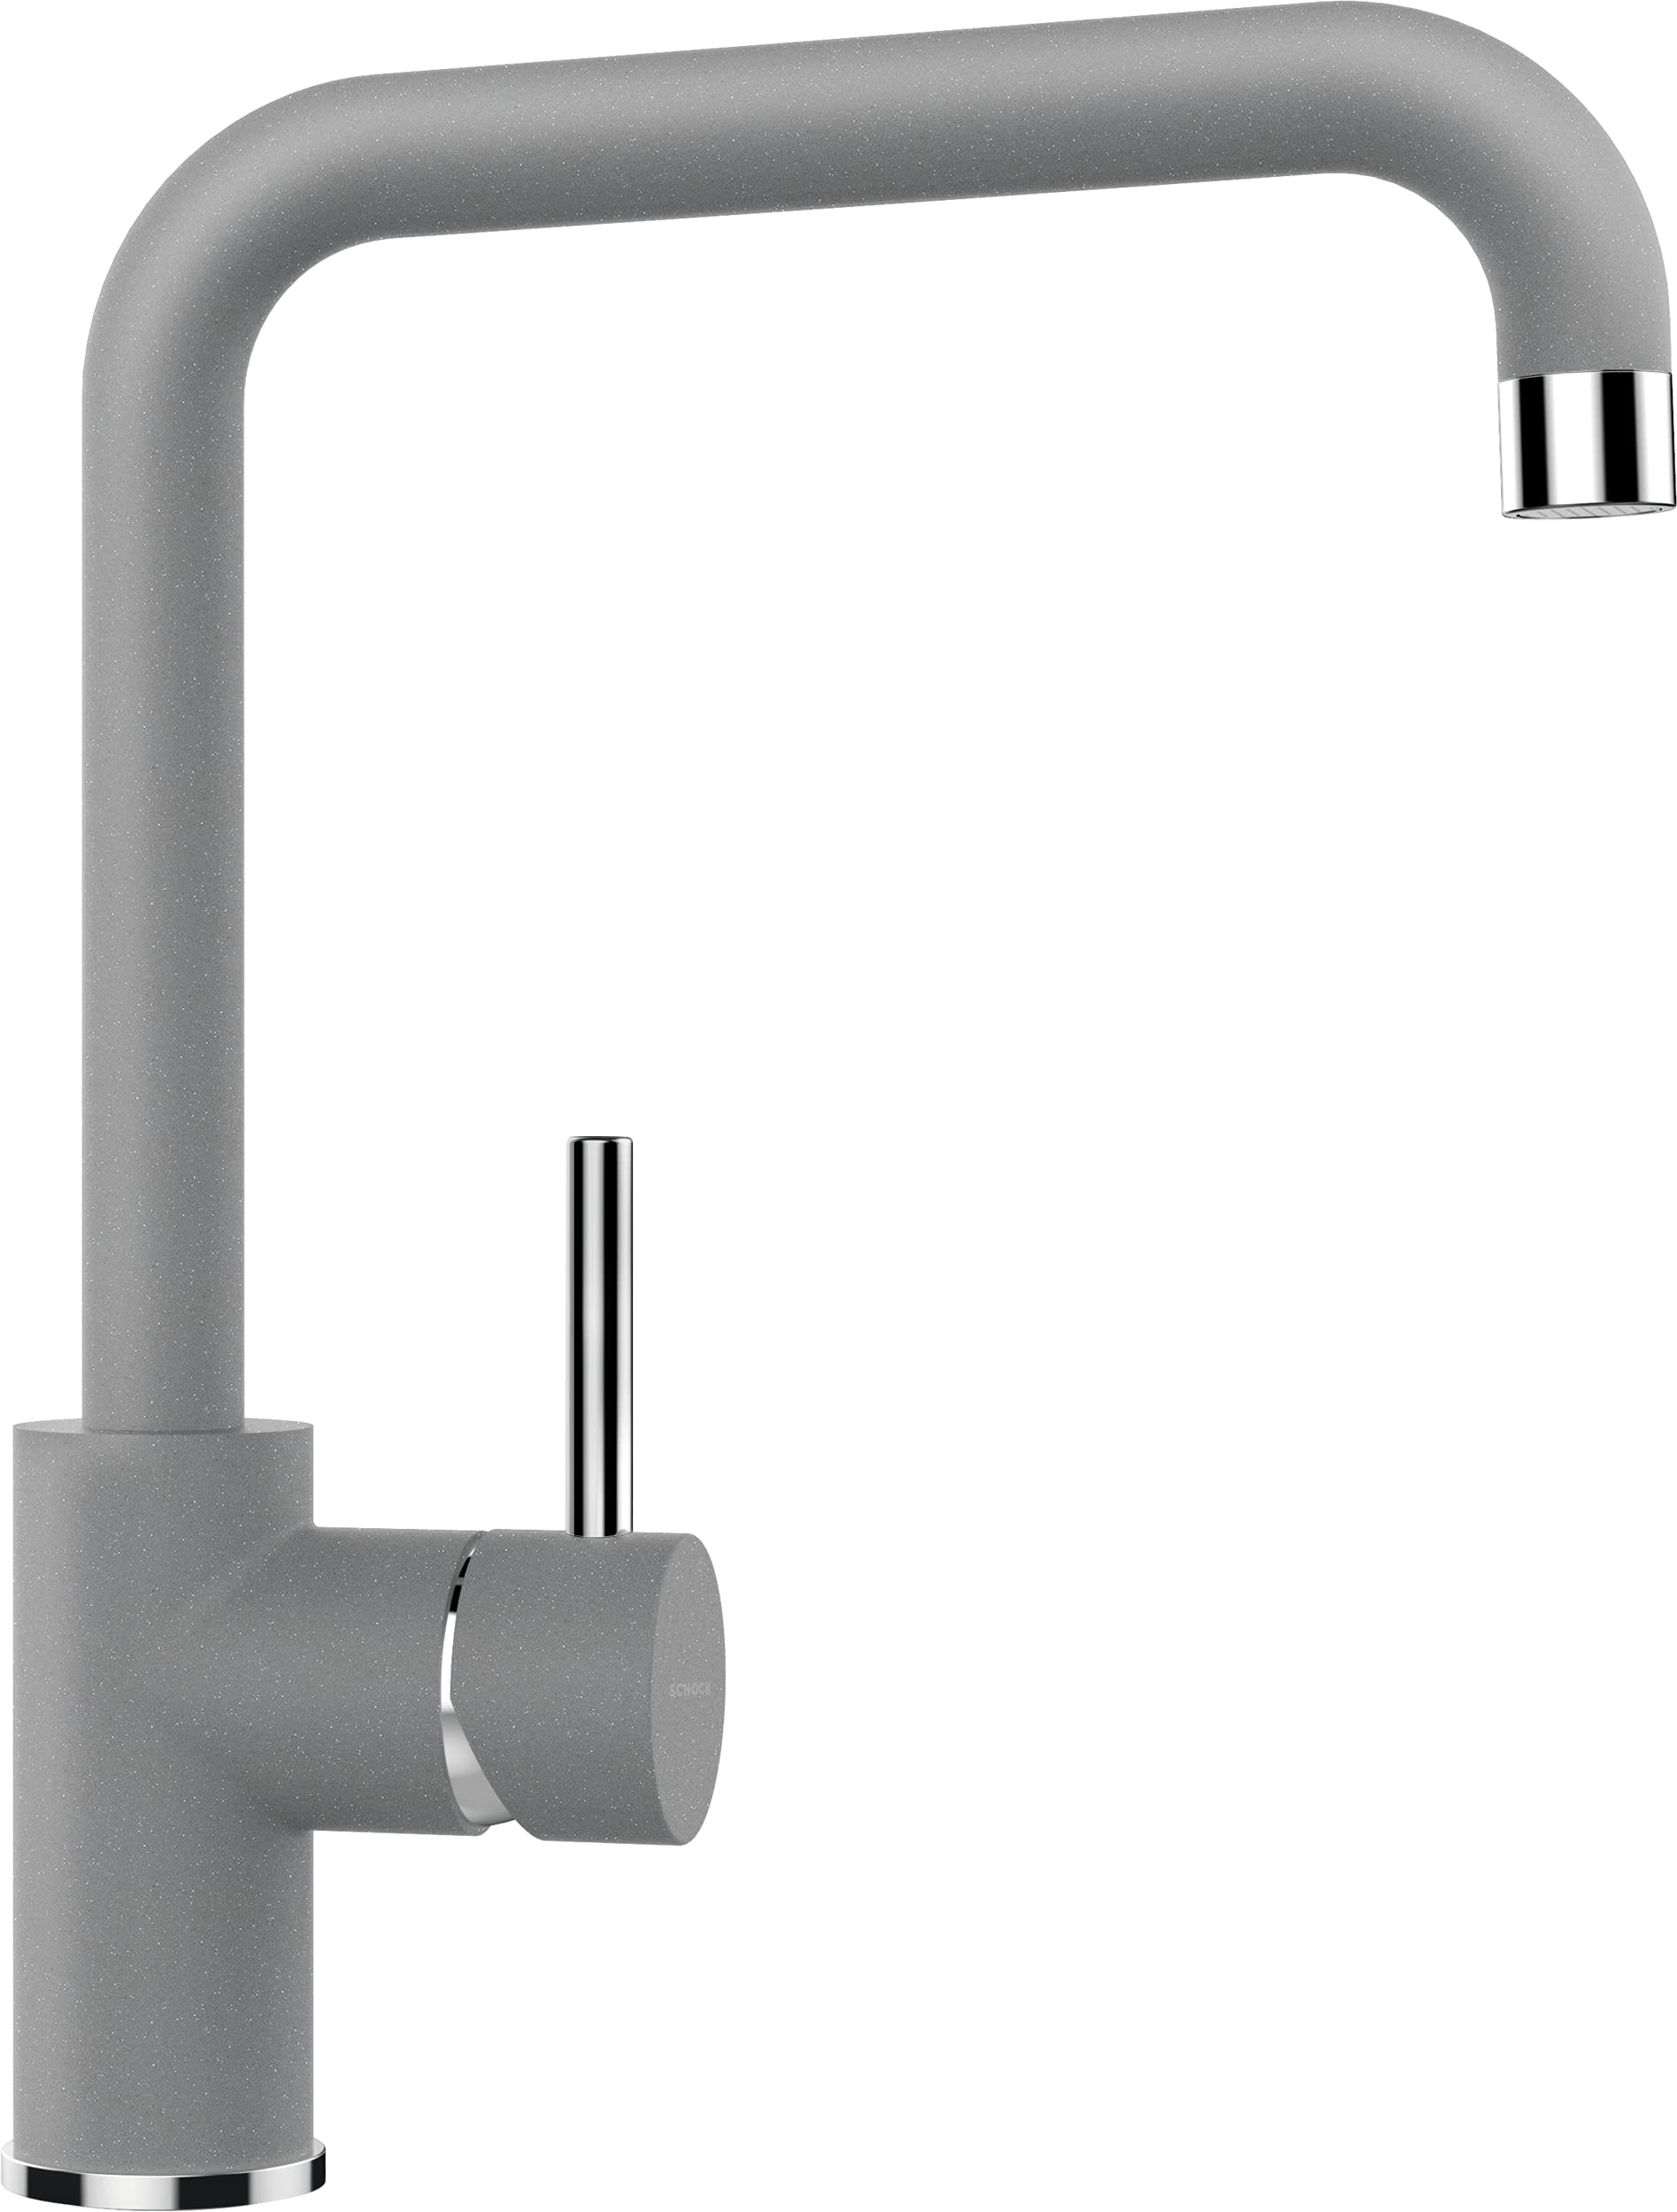 SCHOCK Küchenarmatur FONOS in Croma – Hochdruck Armatur mit Festauslauf, extrastarkem Wasserdurchlauf und eingebautem Temperaturbegrenzer